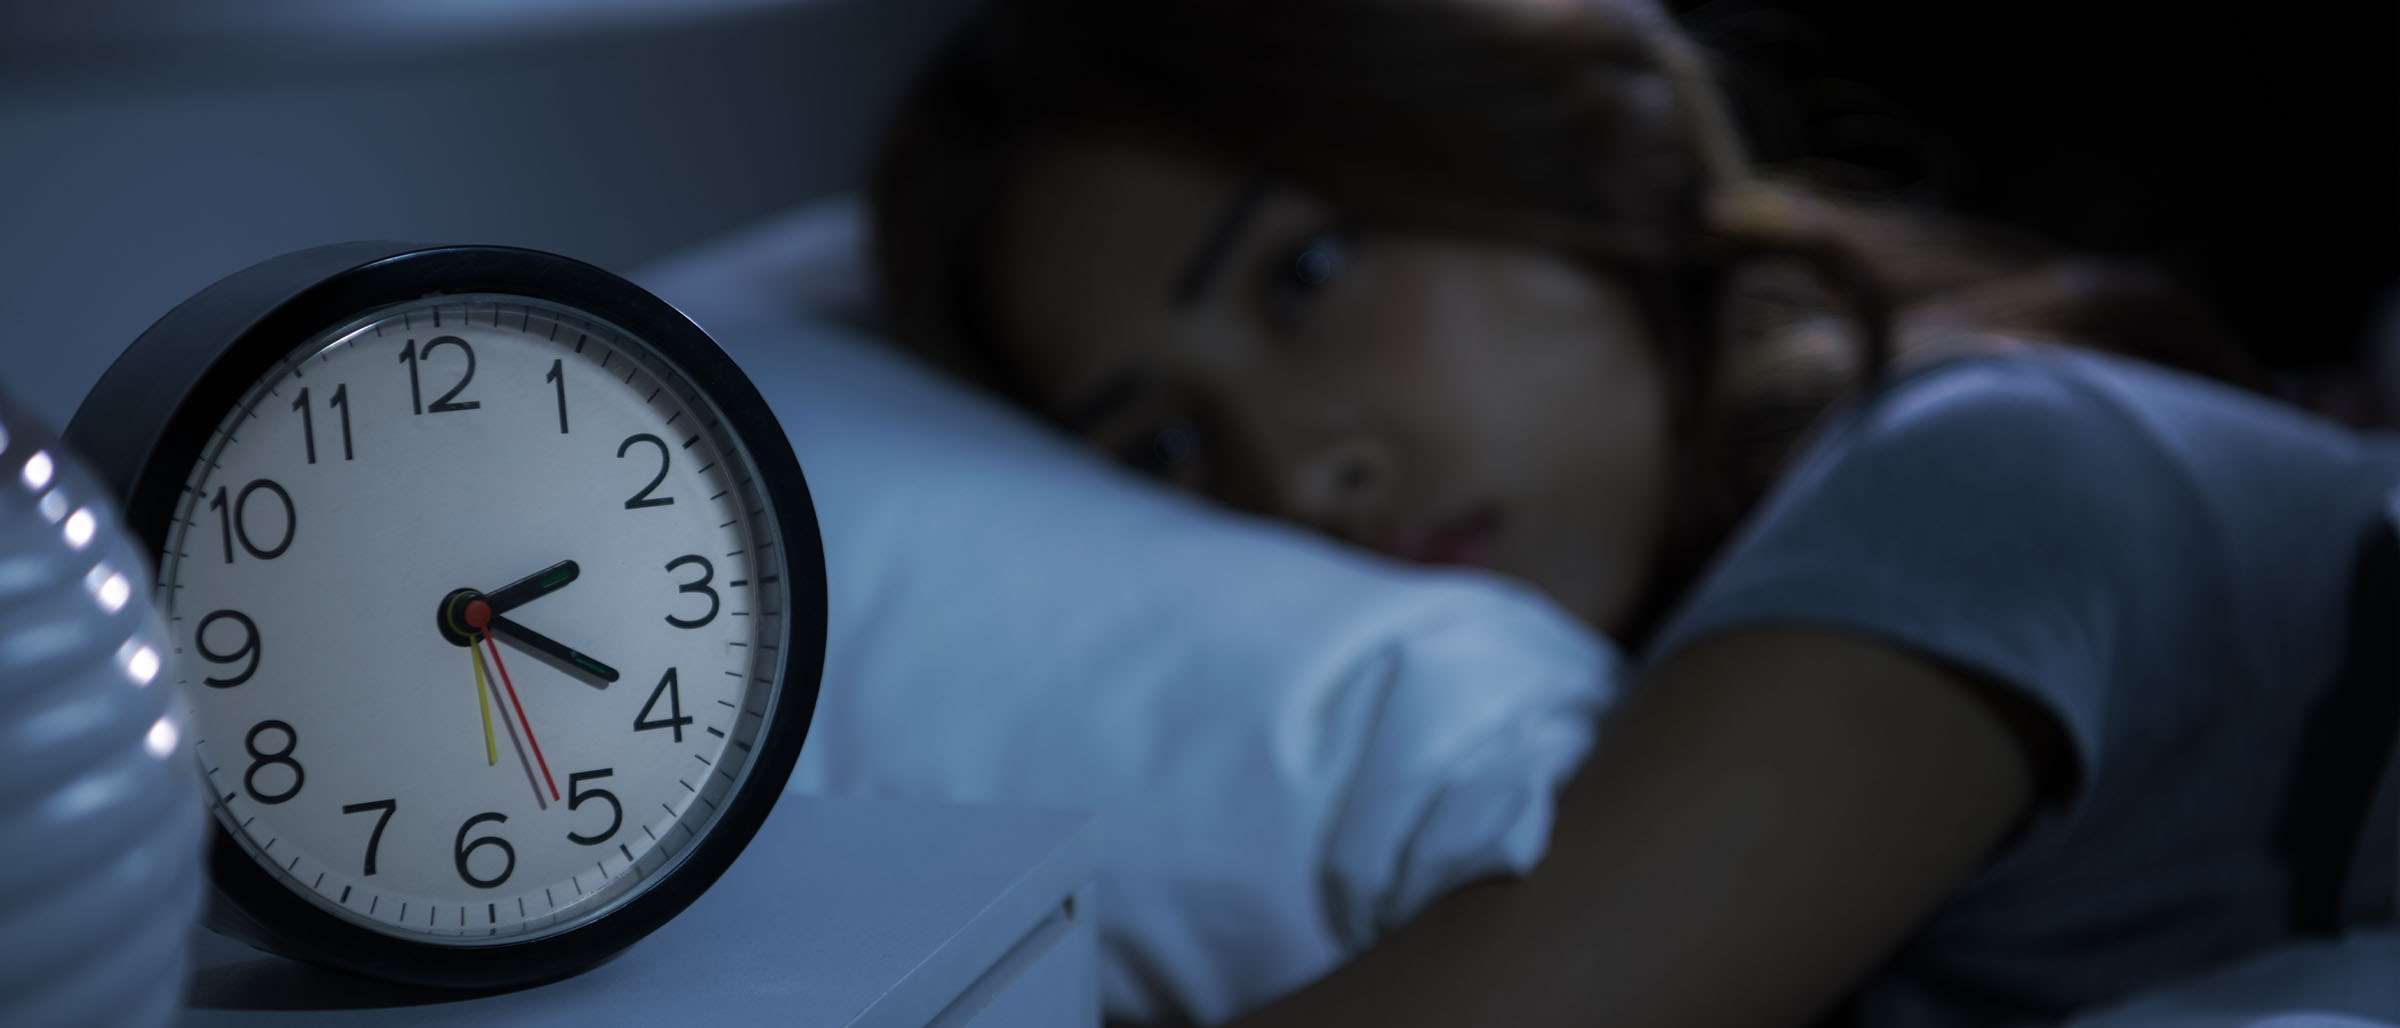 14 ways to treat sleep disorders and insomnia after Ramadan